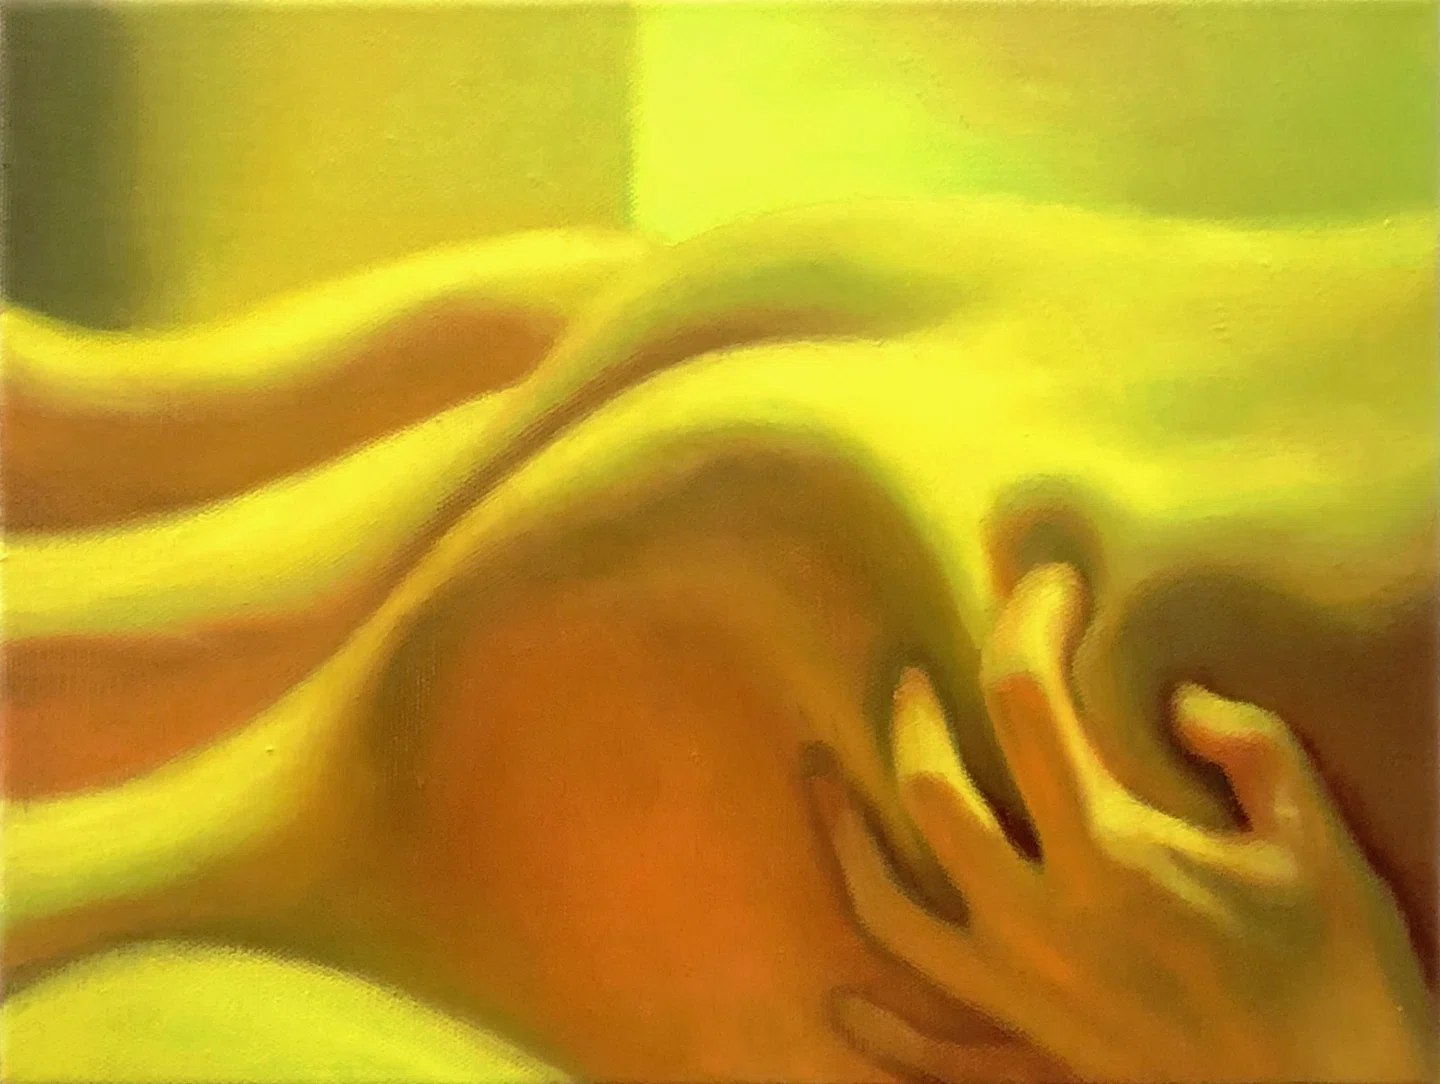 “Intenso, ambivalente e inquieto”: Tao Siqi explora a complexidade do desejo em suas pinturas sensuais